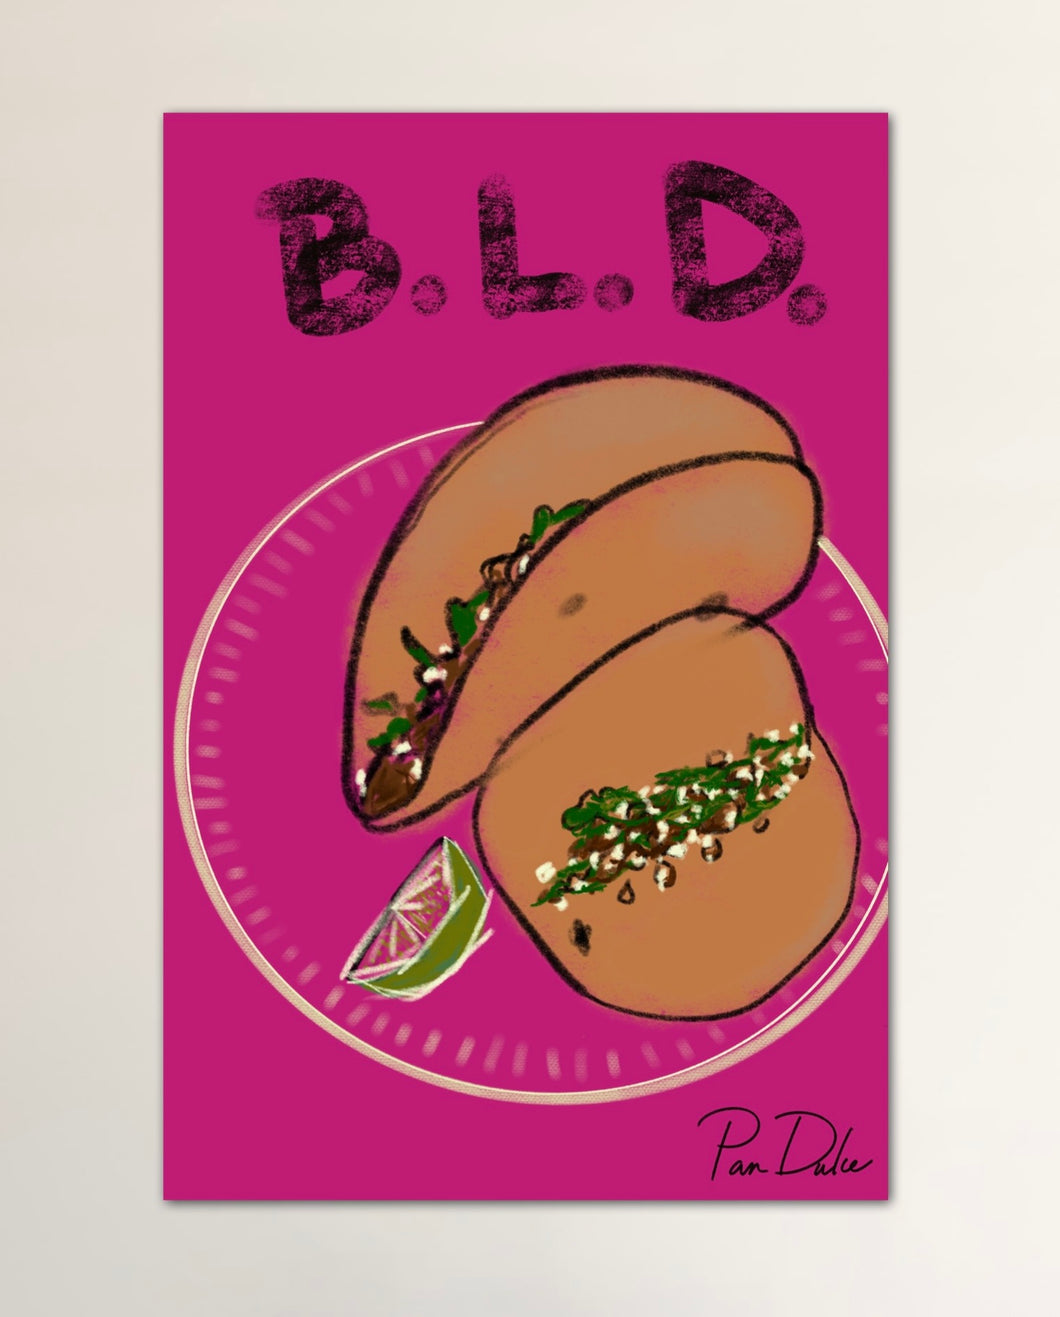 B.L.D Art by Pan Dulce